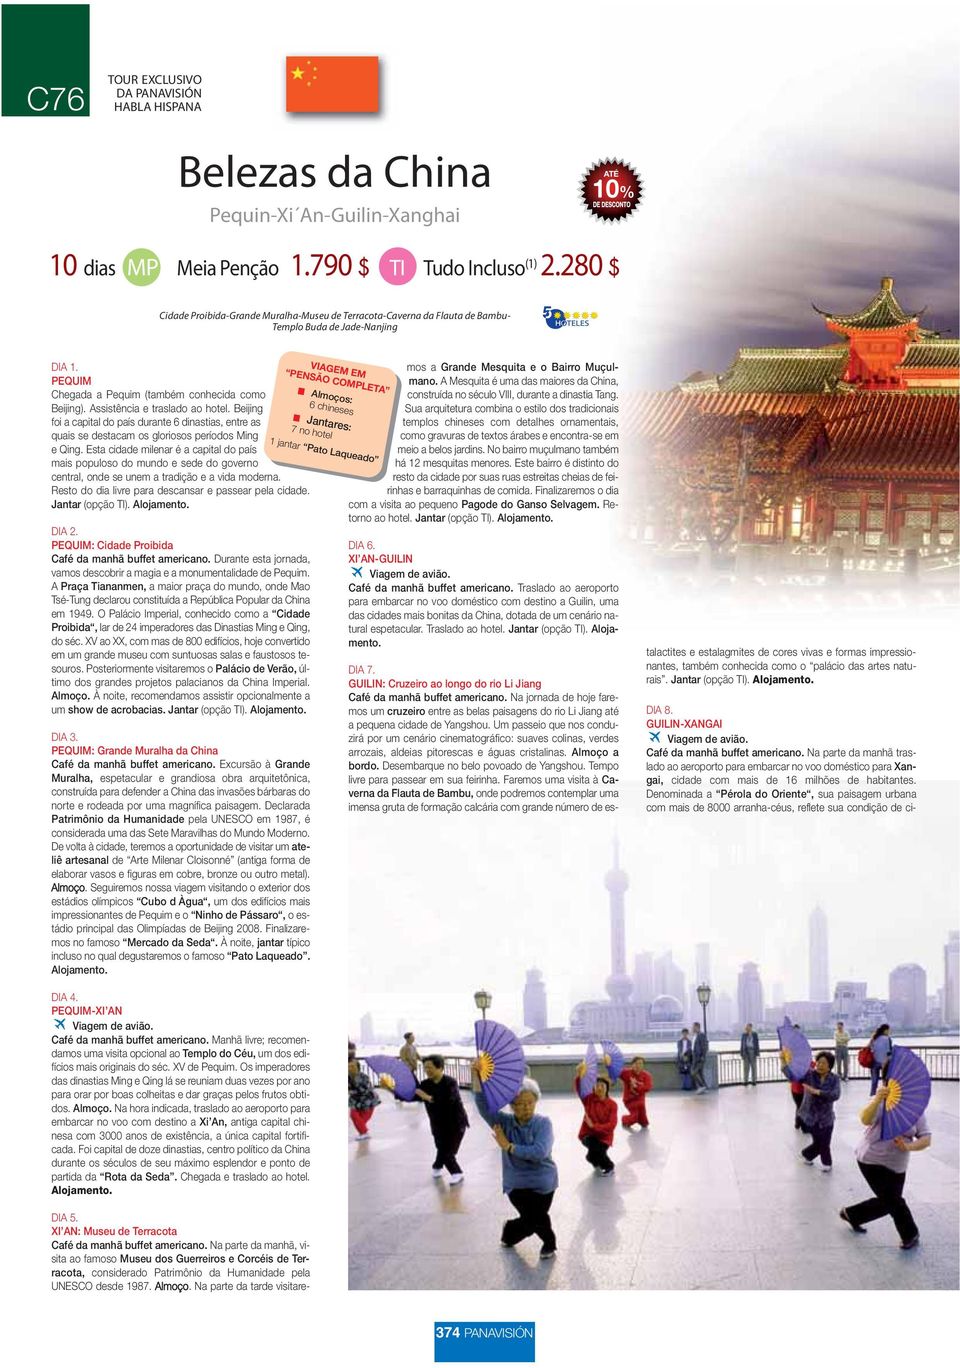 Assistência e traslado ao hotel. Beijing foi a capital do país durante 6 dinastias, entre as quais se destacam os gloriosos períodos Ming e Qing.